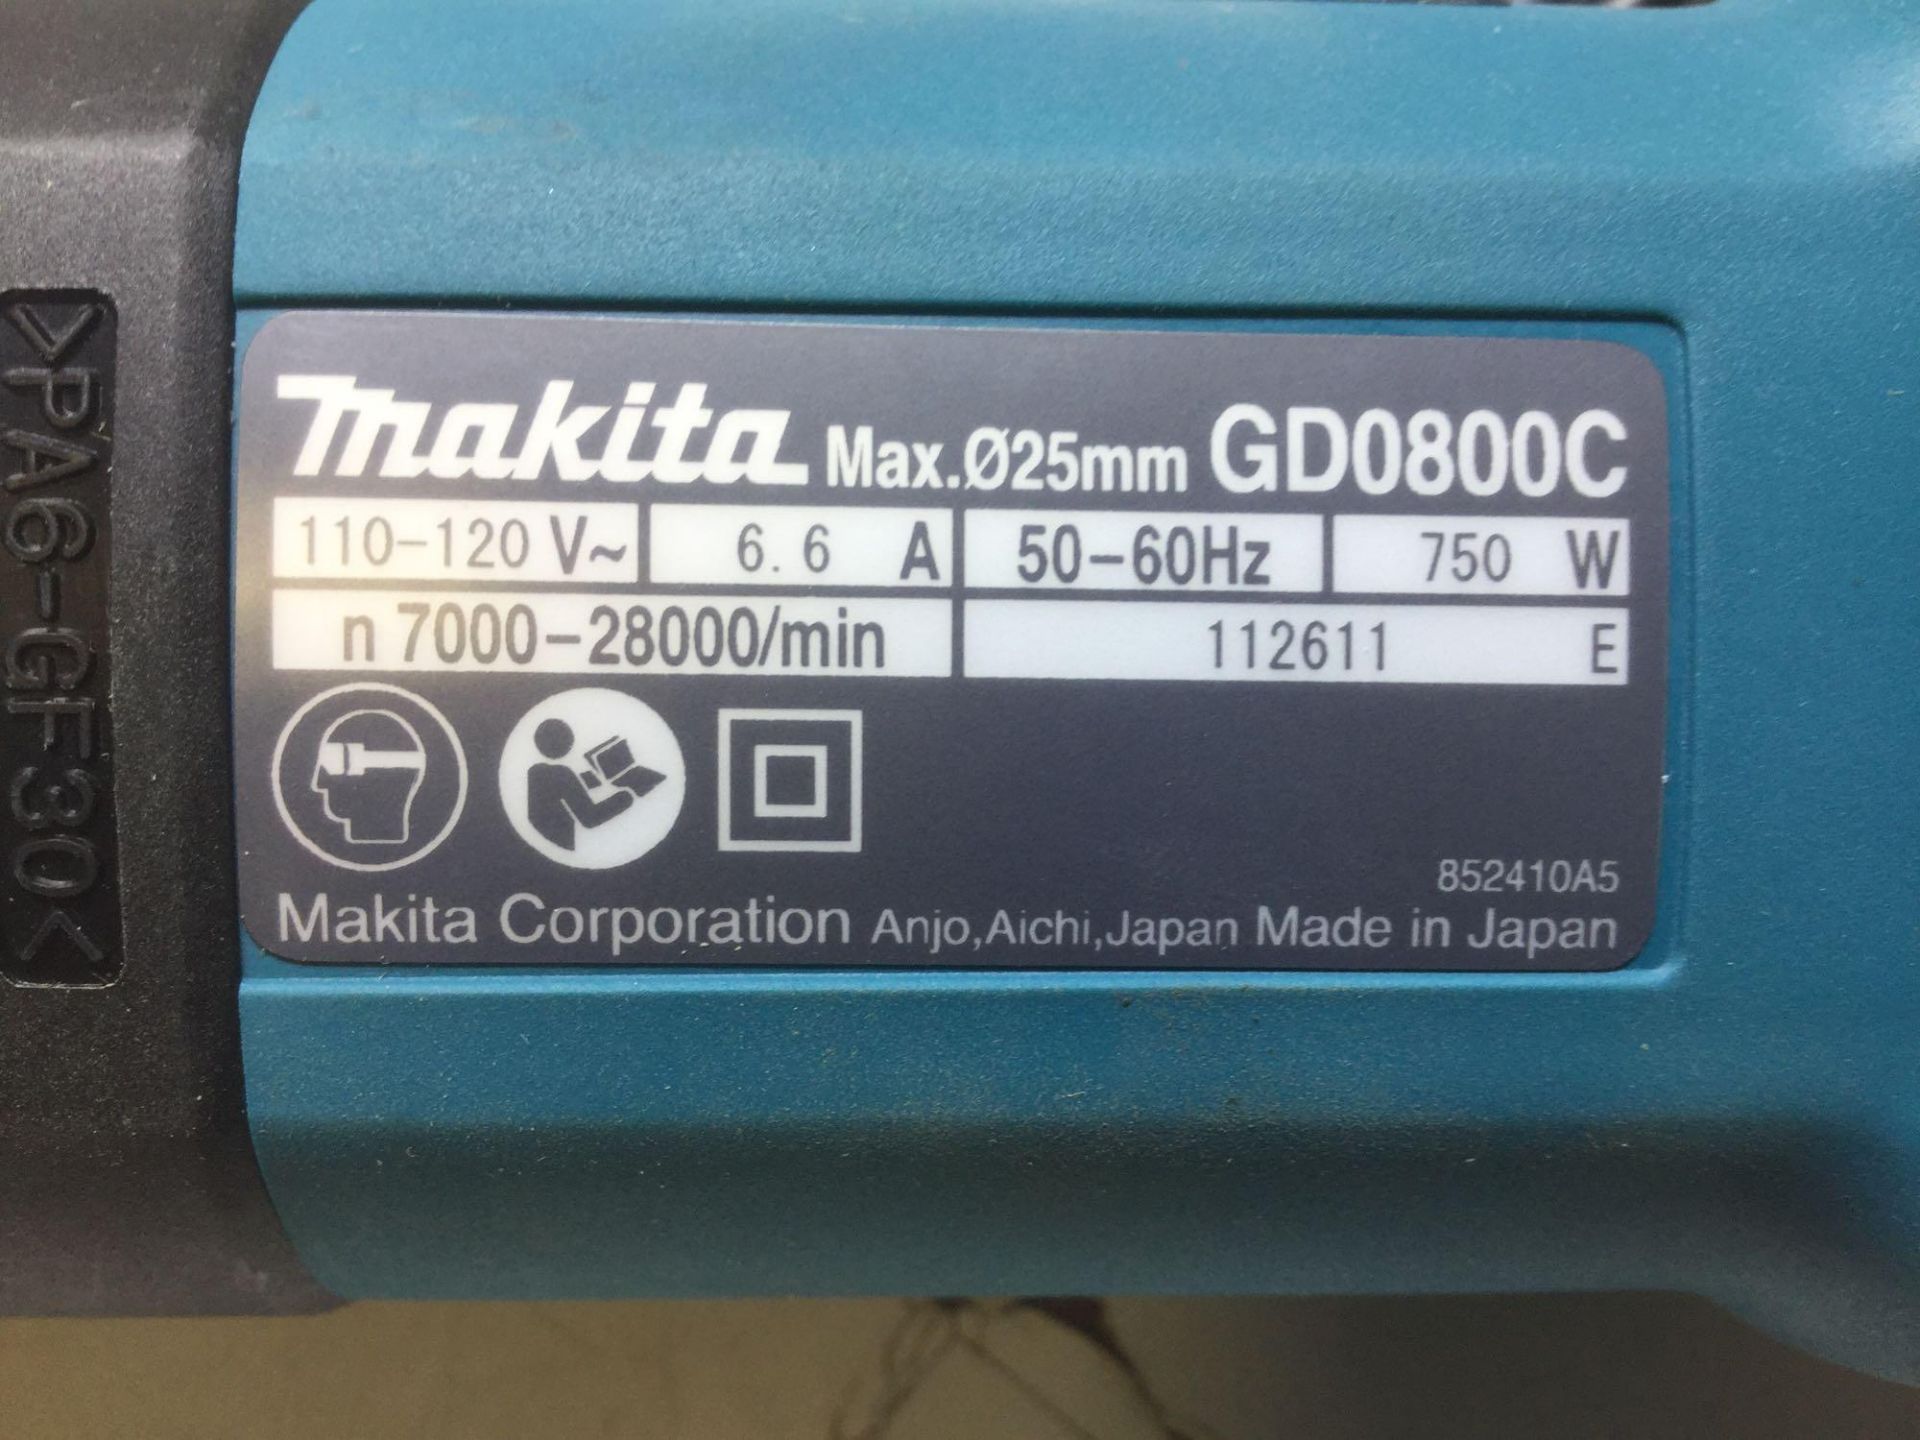 Makita die grinder model GD0800C brand new in box - Image 3 of 5